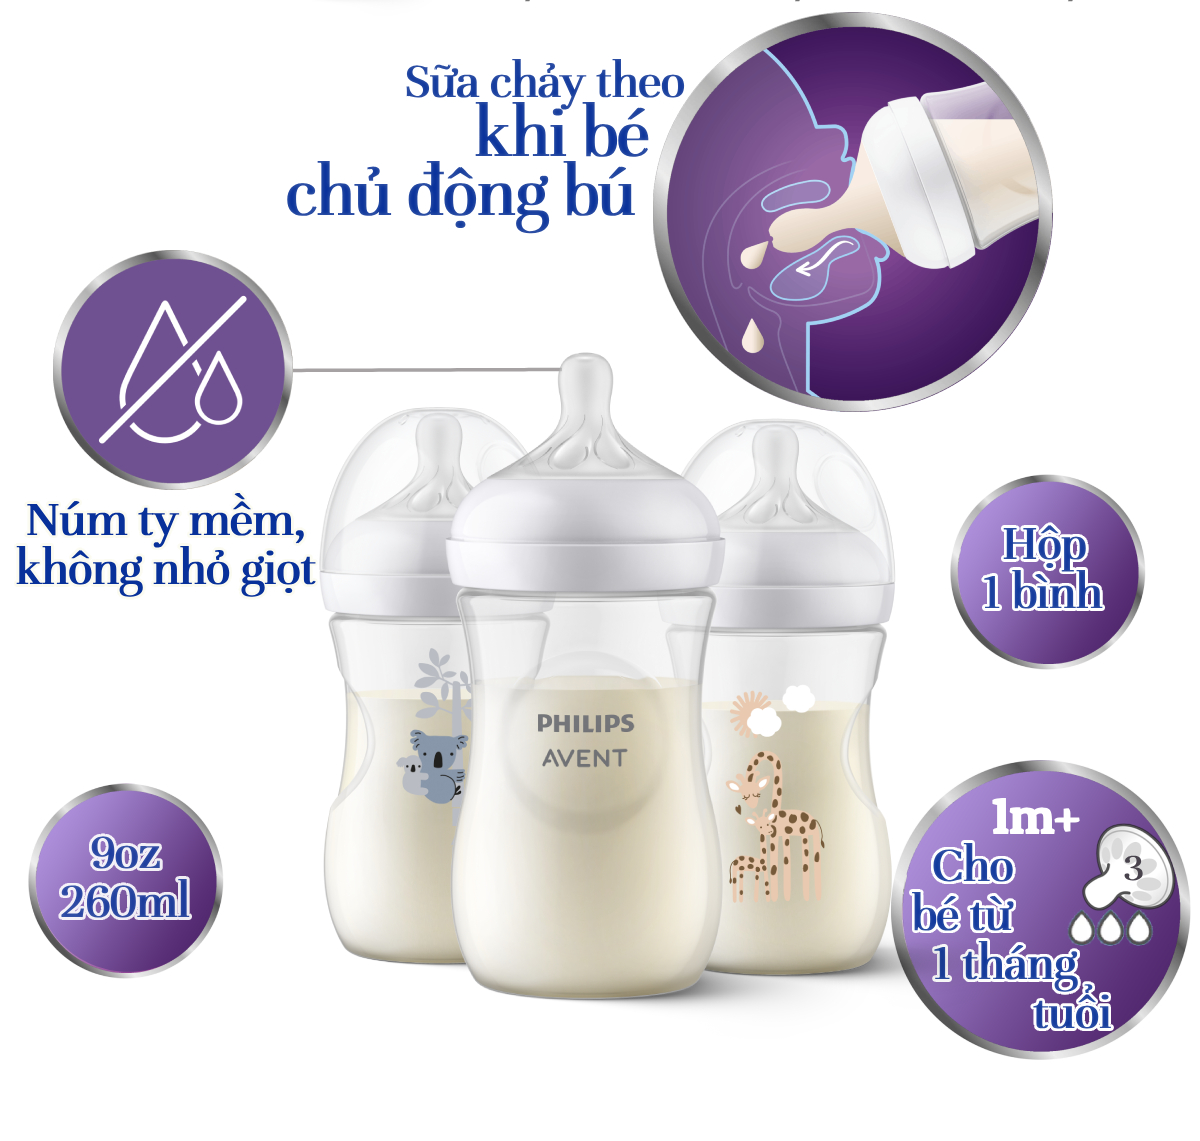 hilips Avent Bình sữa mô phỏng tự nhiên mới_dung tích 260ml cho bé từ 1 tháng SCY903.01 SCY903.66 SCY903.67 SCY903.02